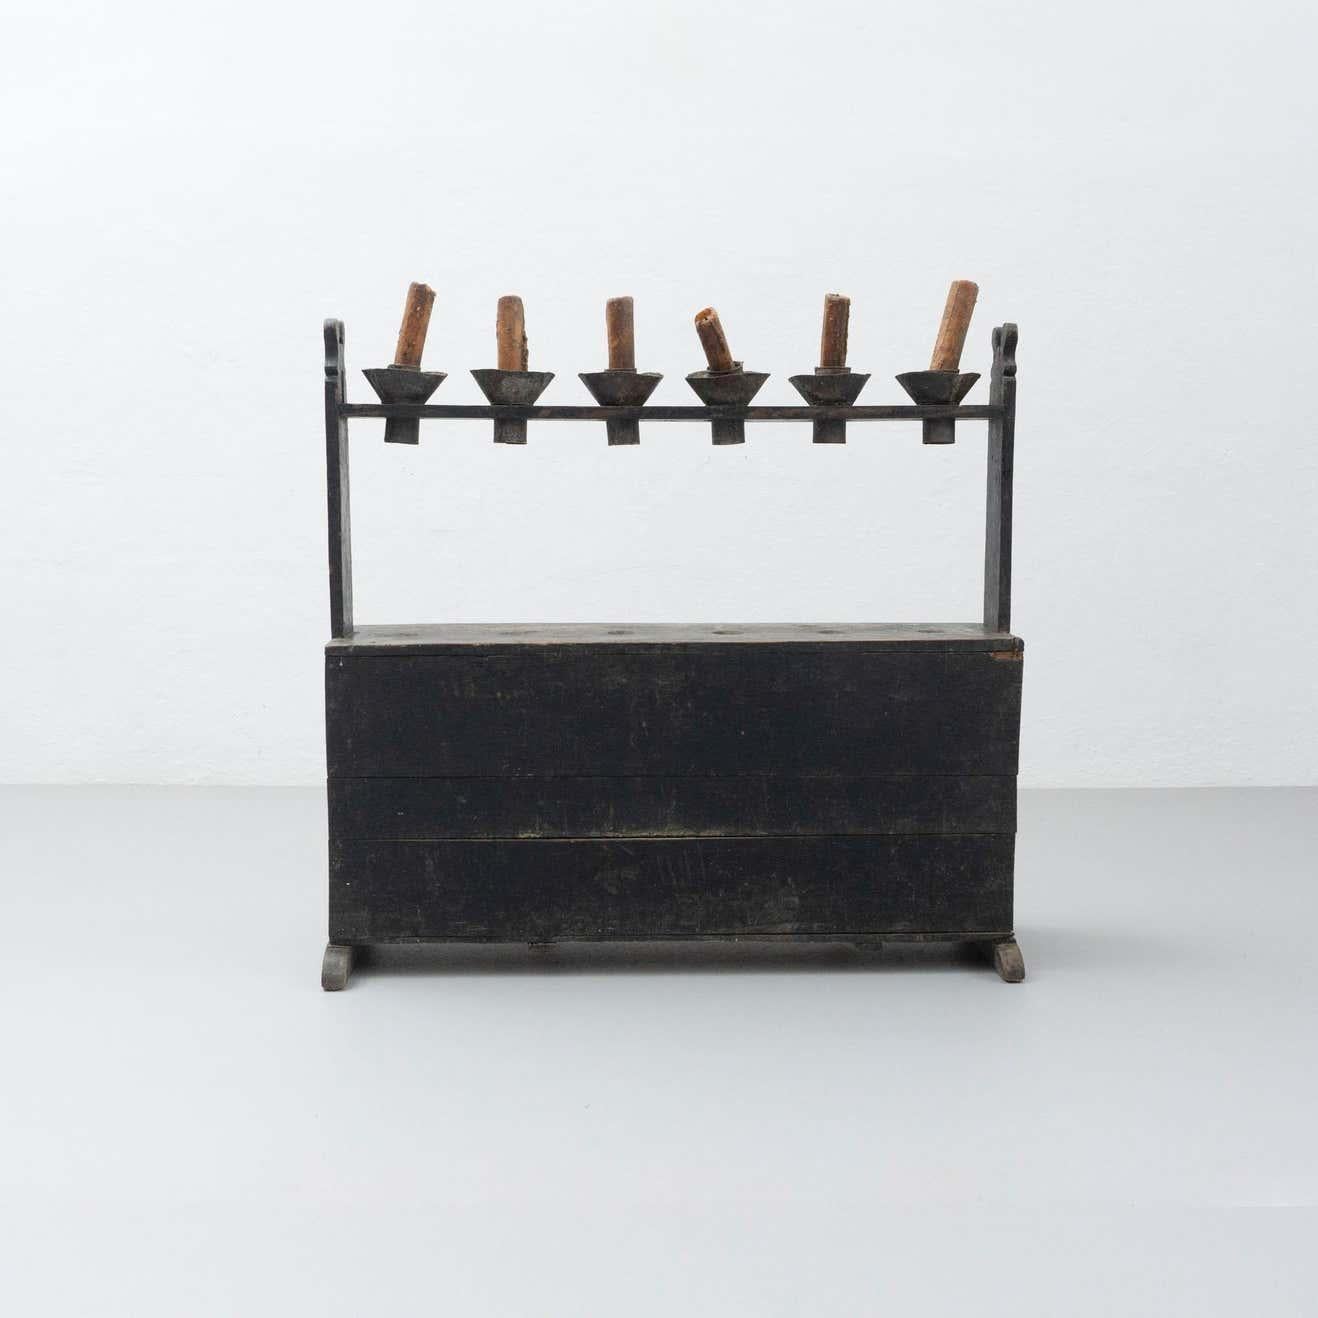 Dieser antike Hachero-Kerzenhalter ist ein traditionelles Stück aus Spanien. Er ist aus gebeiztem Holz gefertigt und stammt aus der Zeit um 1890. Trotz seines Alters befindet es sich noch im Originalzustand, mit geringen alters- und